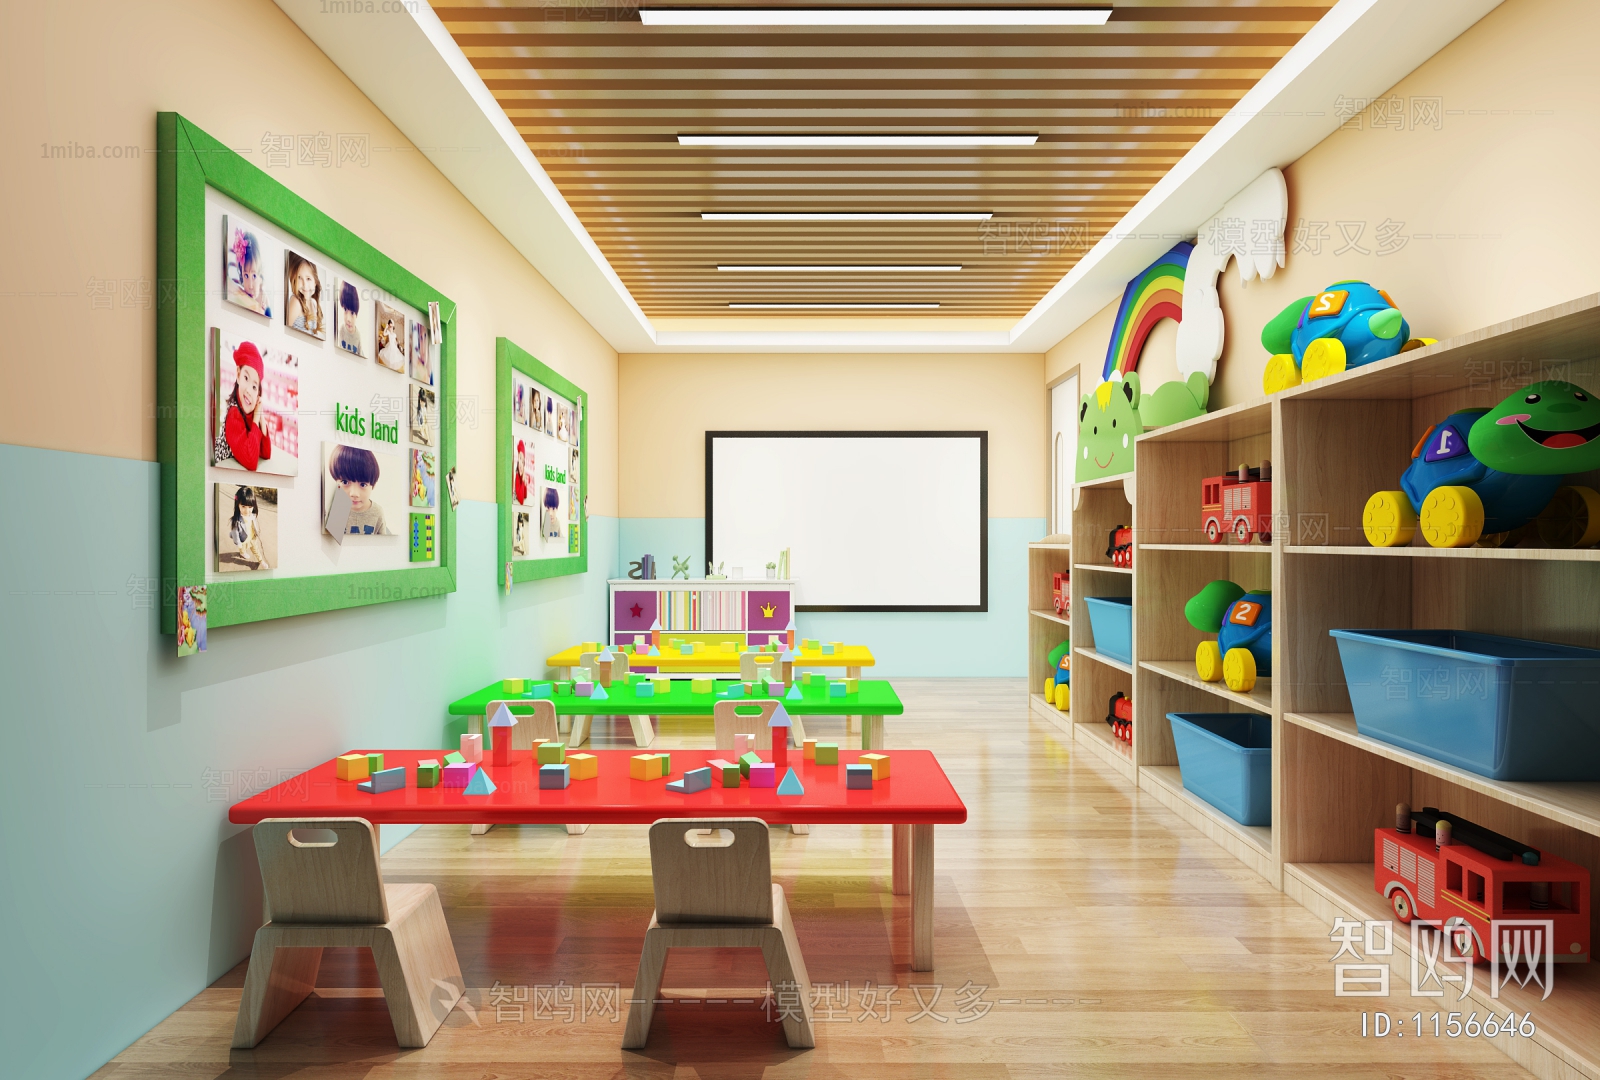 Modern Children's Kindergarten